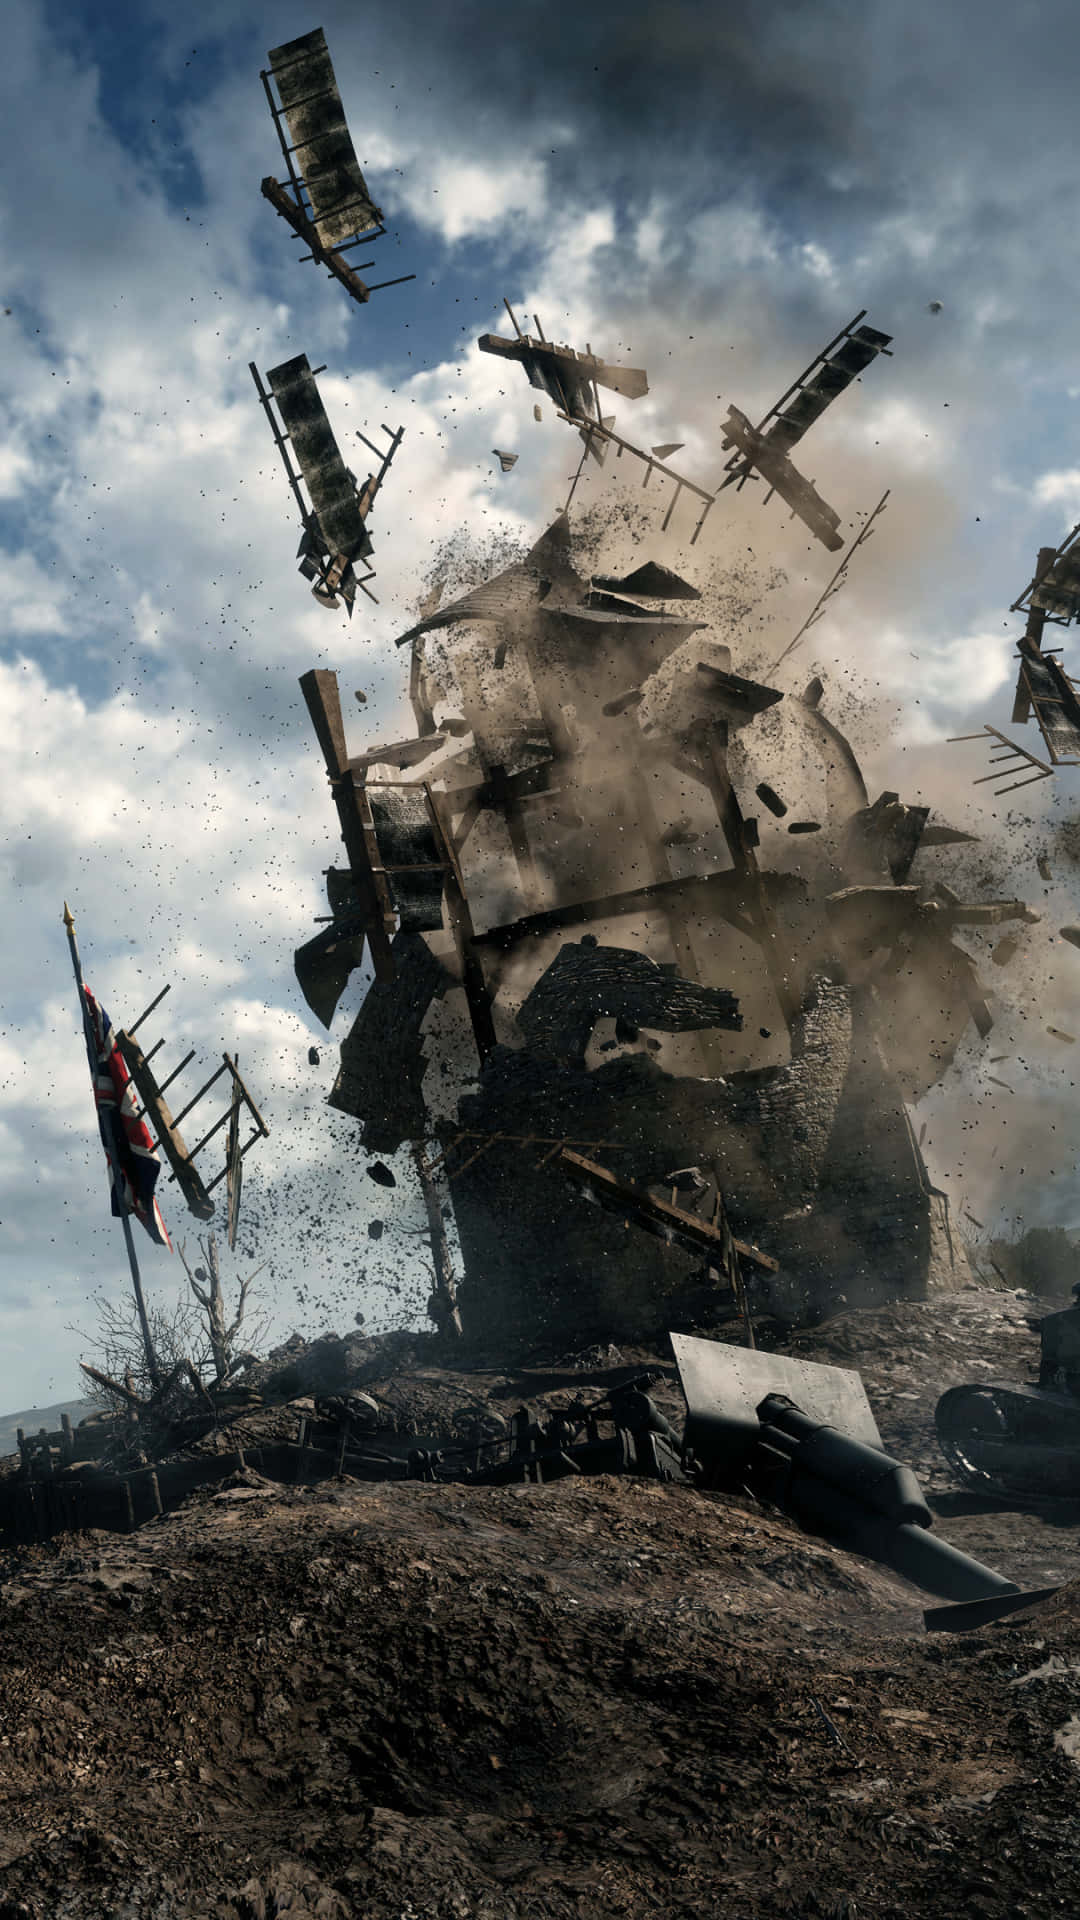 Fondode Pantalla De Pixel 3xl Con La Imagen De Un Barco Siendo Destruido En Battlefield 1.